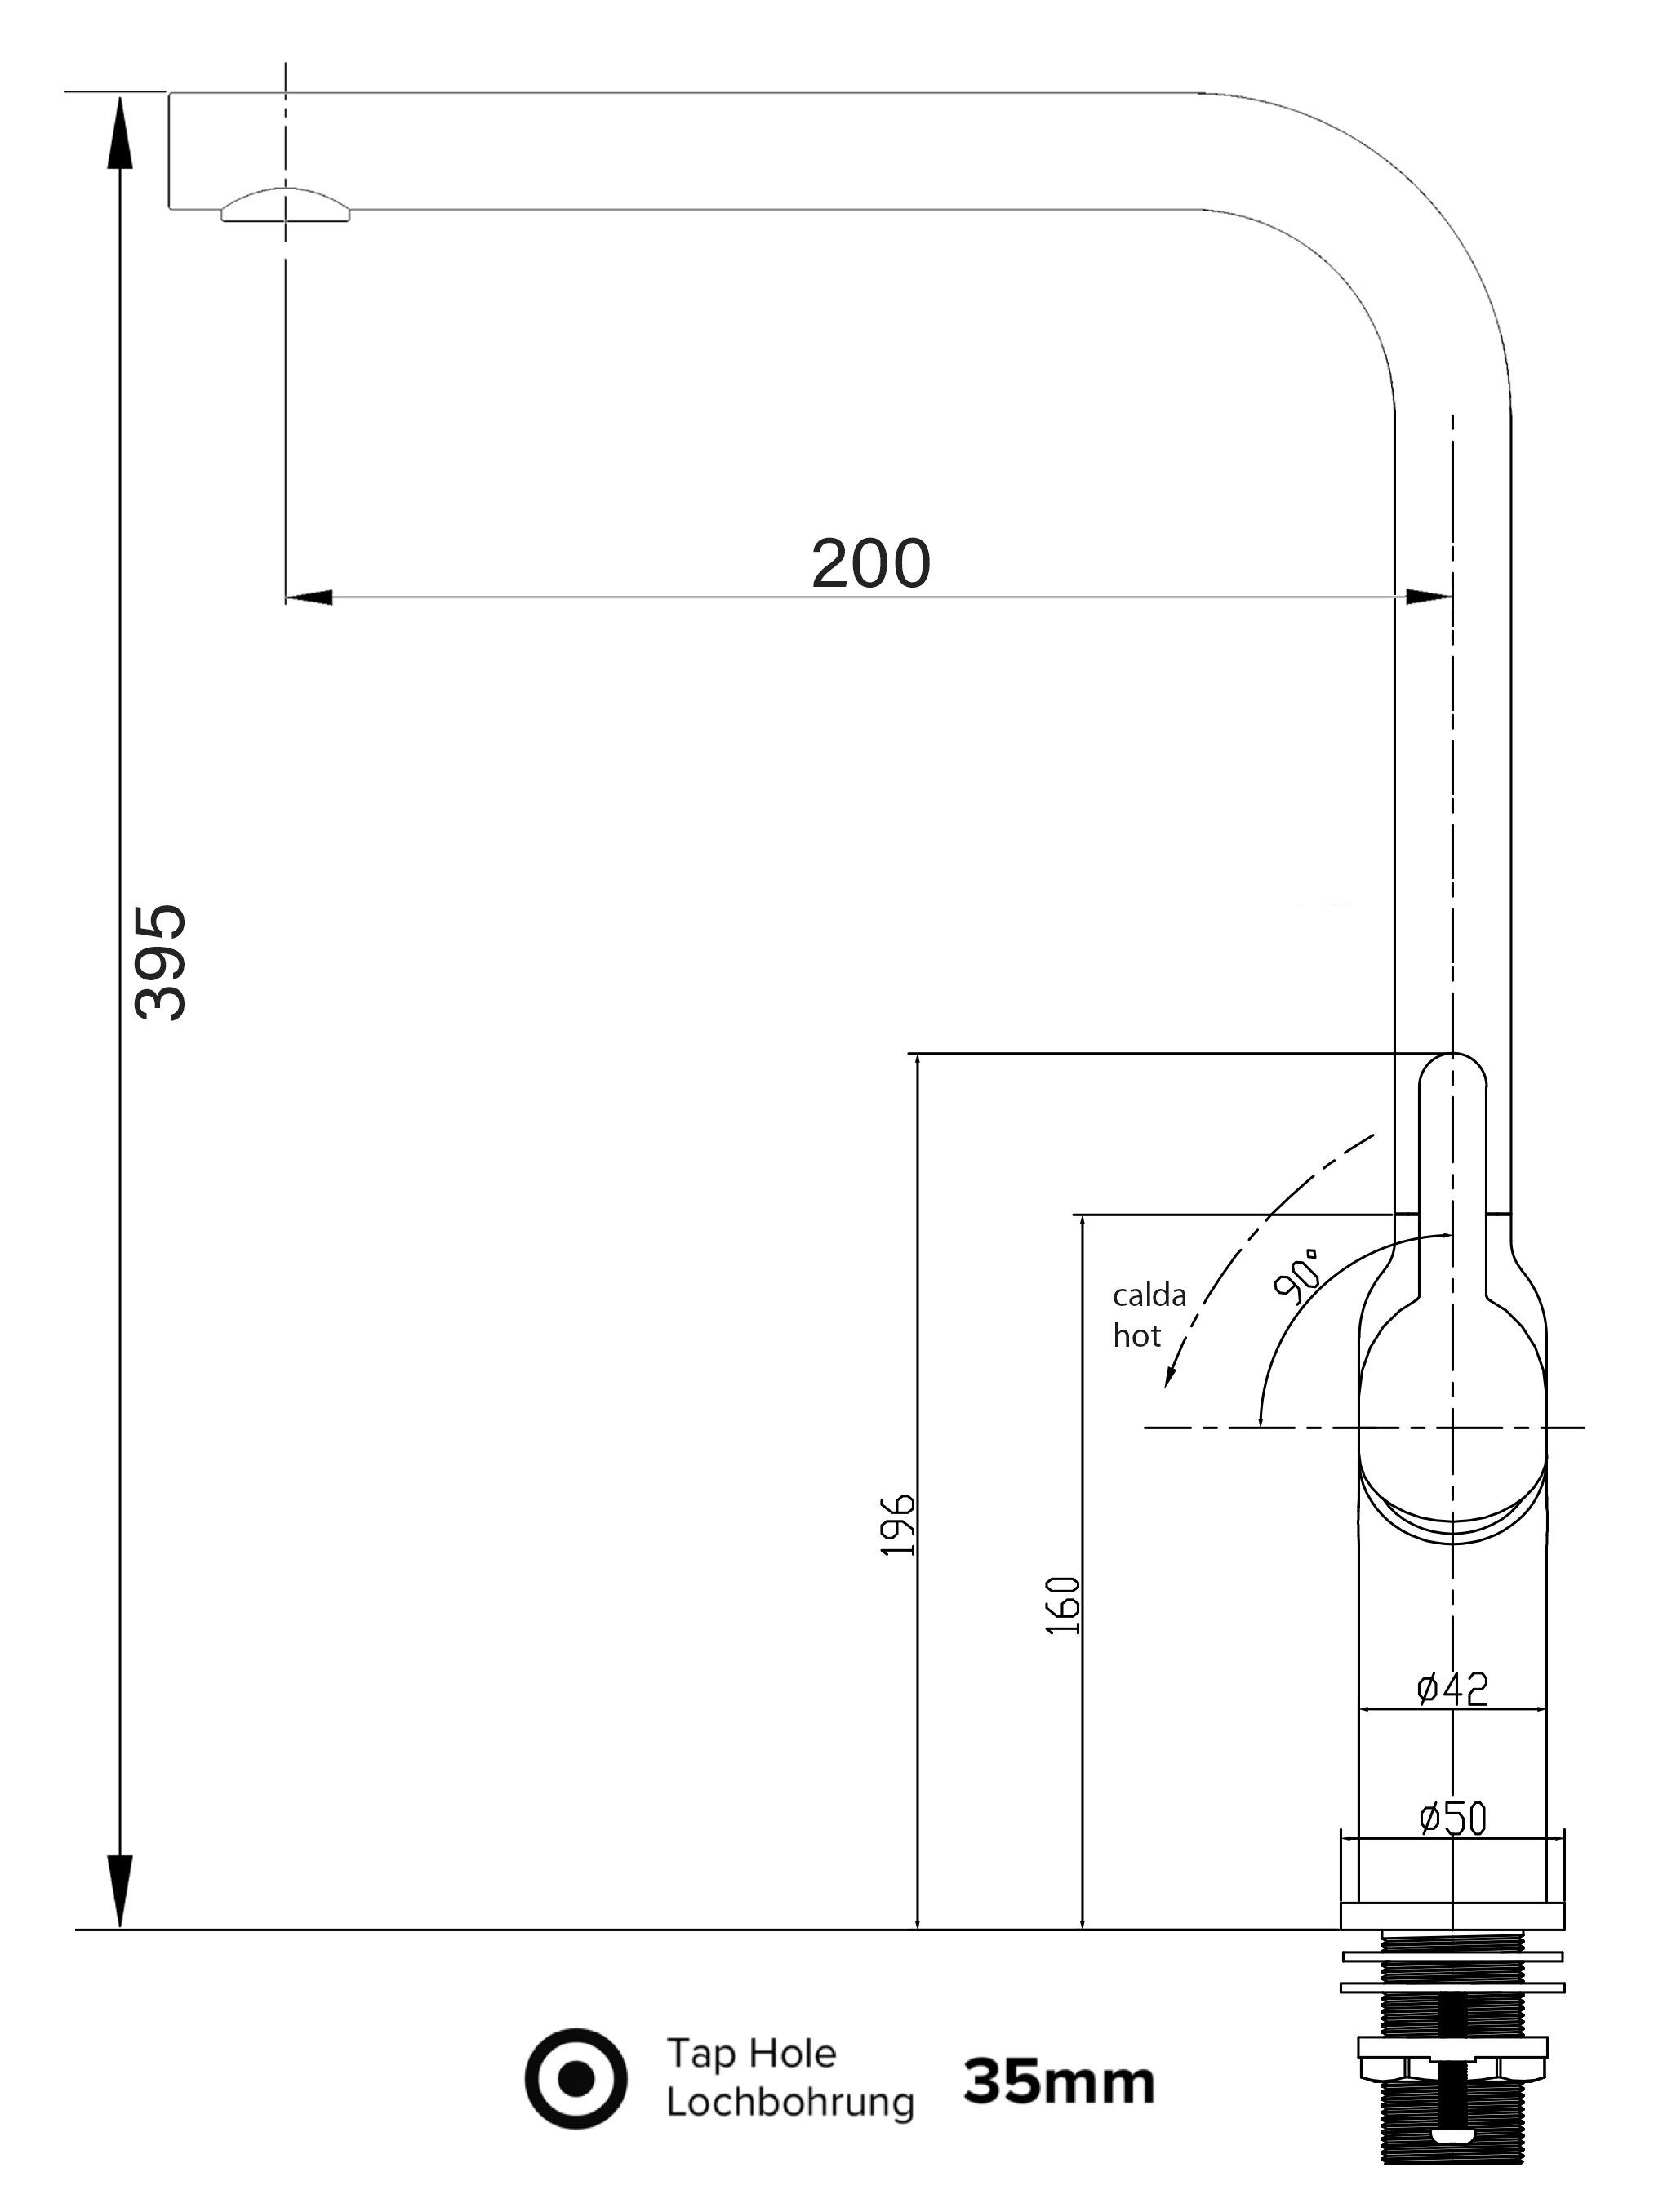 schwenkbarem Wasserhahn chrom Auslauf 360° Design Hochdruck, Küchenarmatur Verchromung VIZIO Küchenarmatur mit Hochwertige